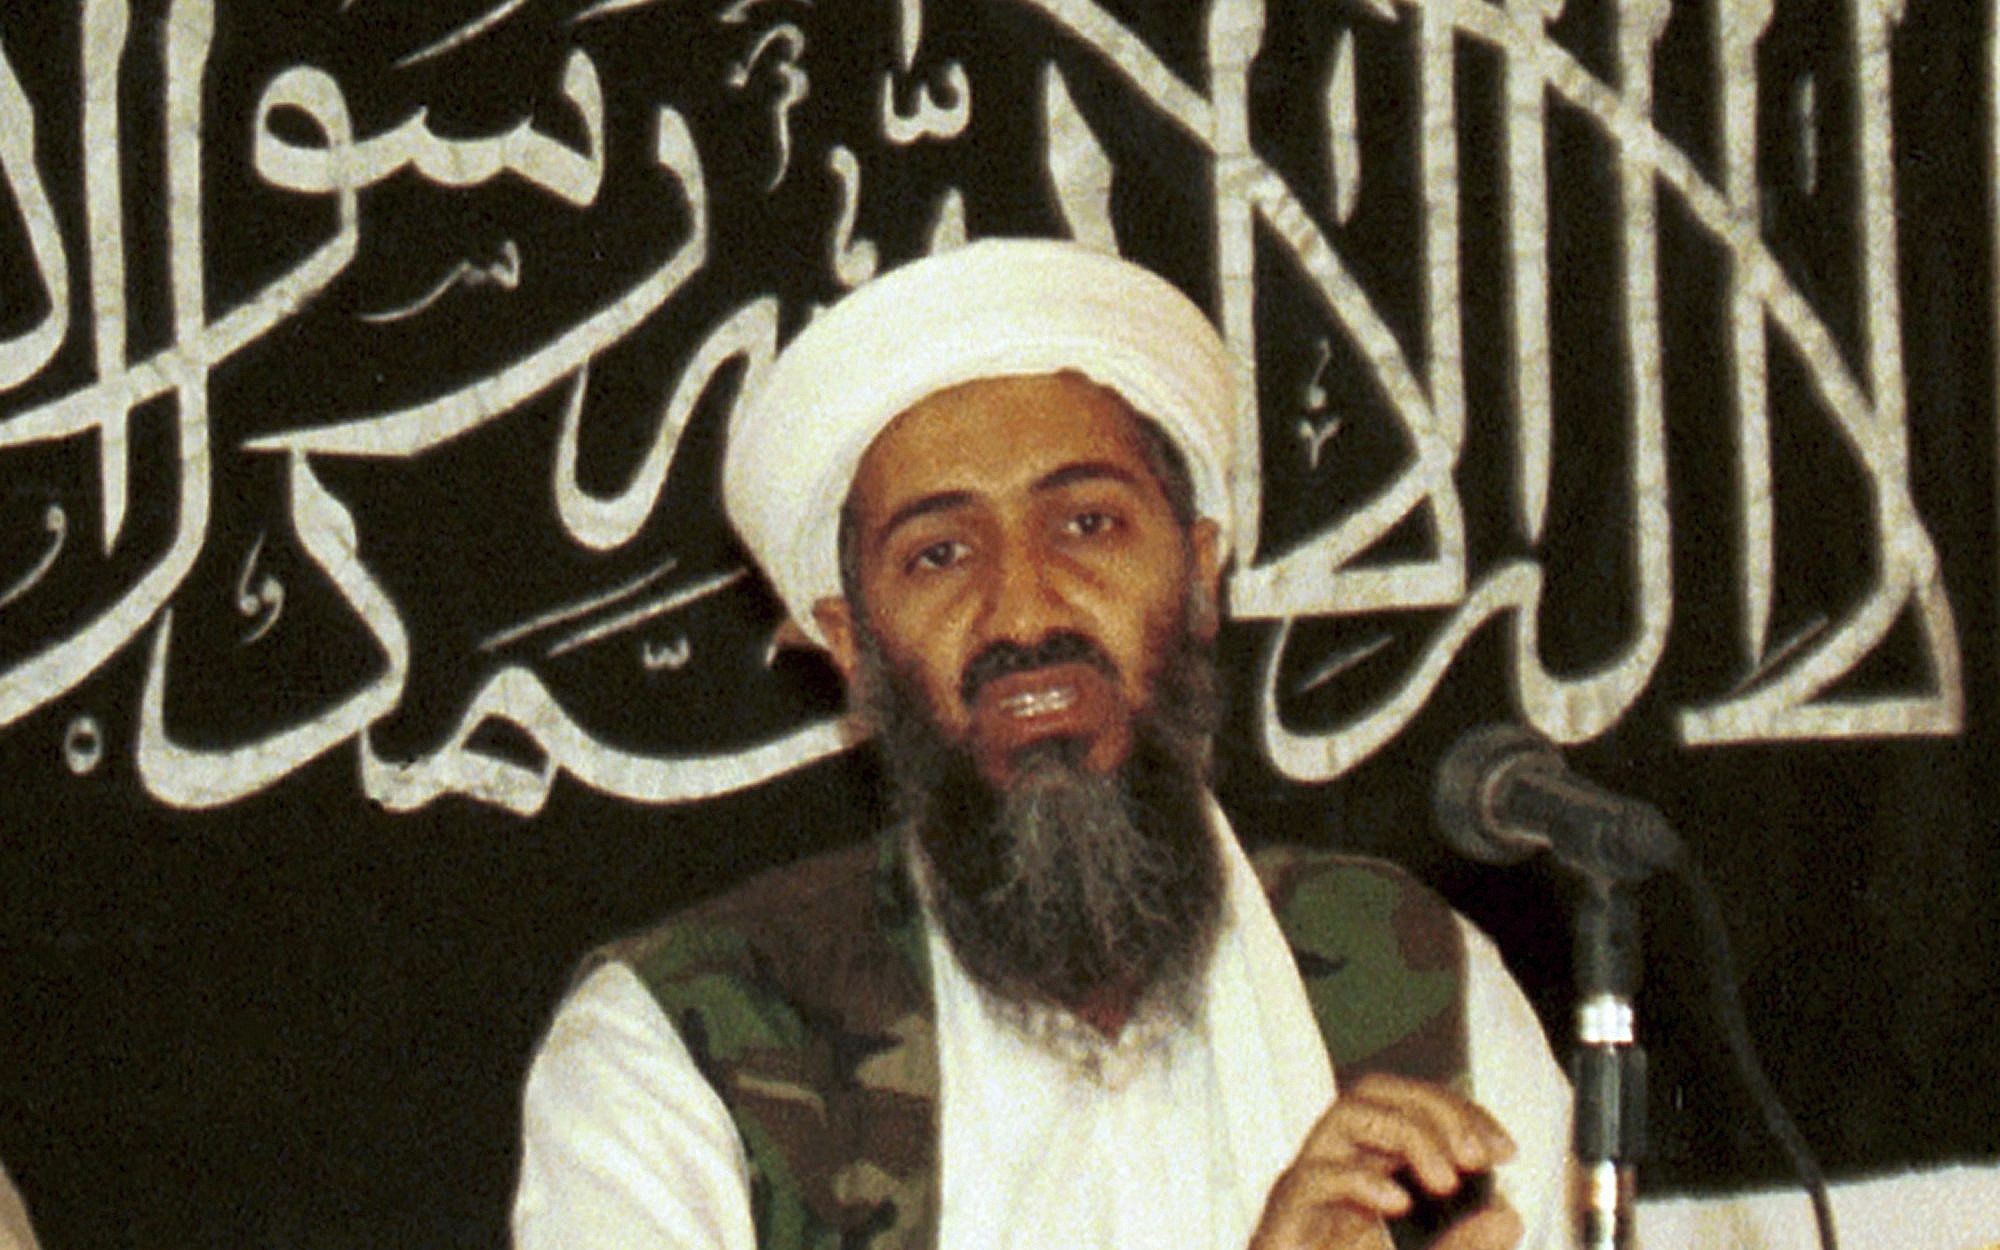 Israeli military slams bin Laden letter going viral on social media